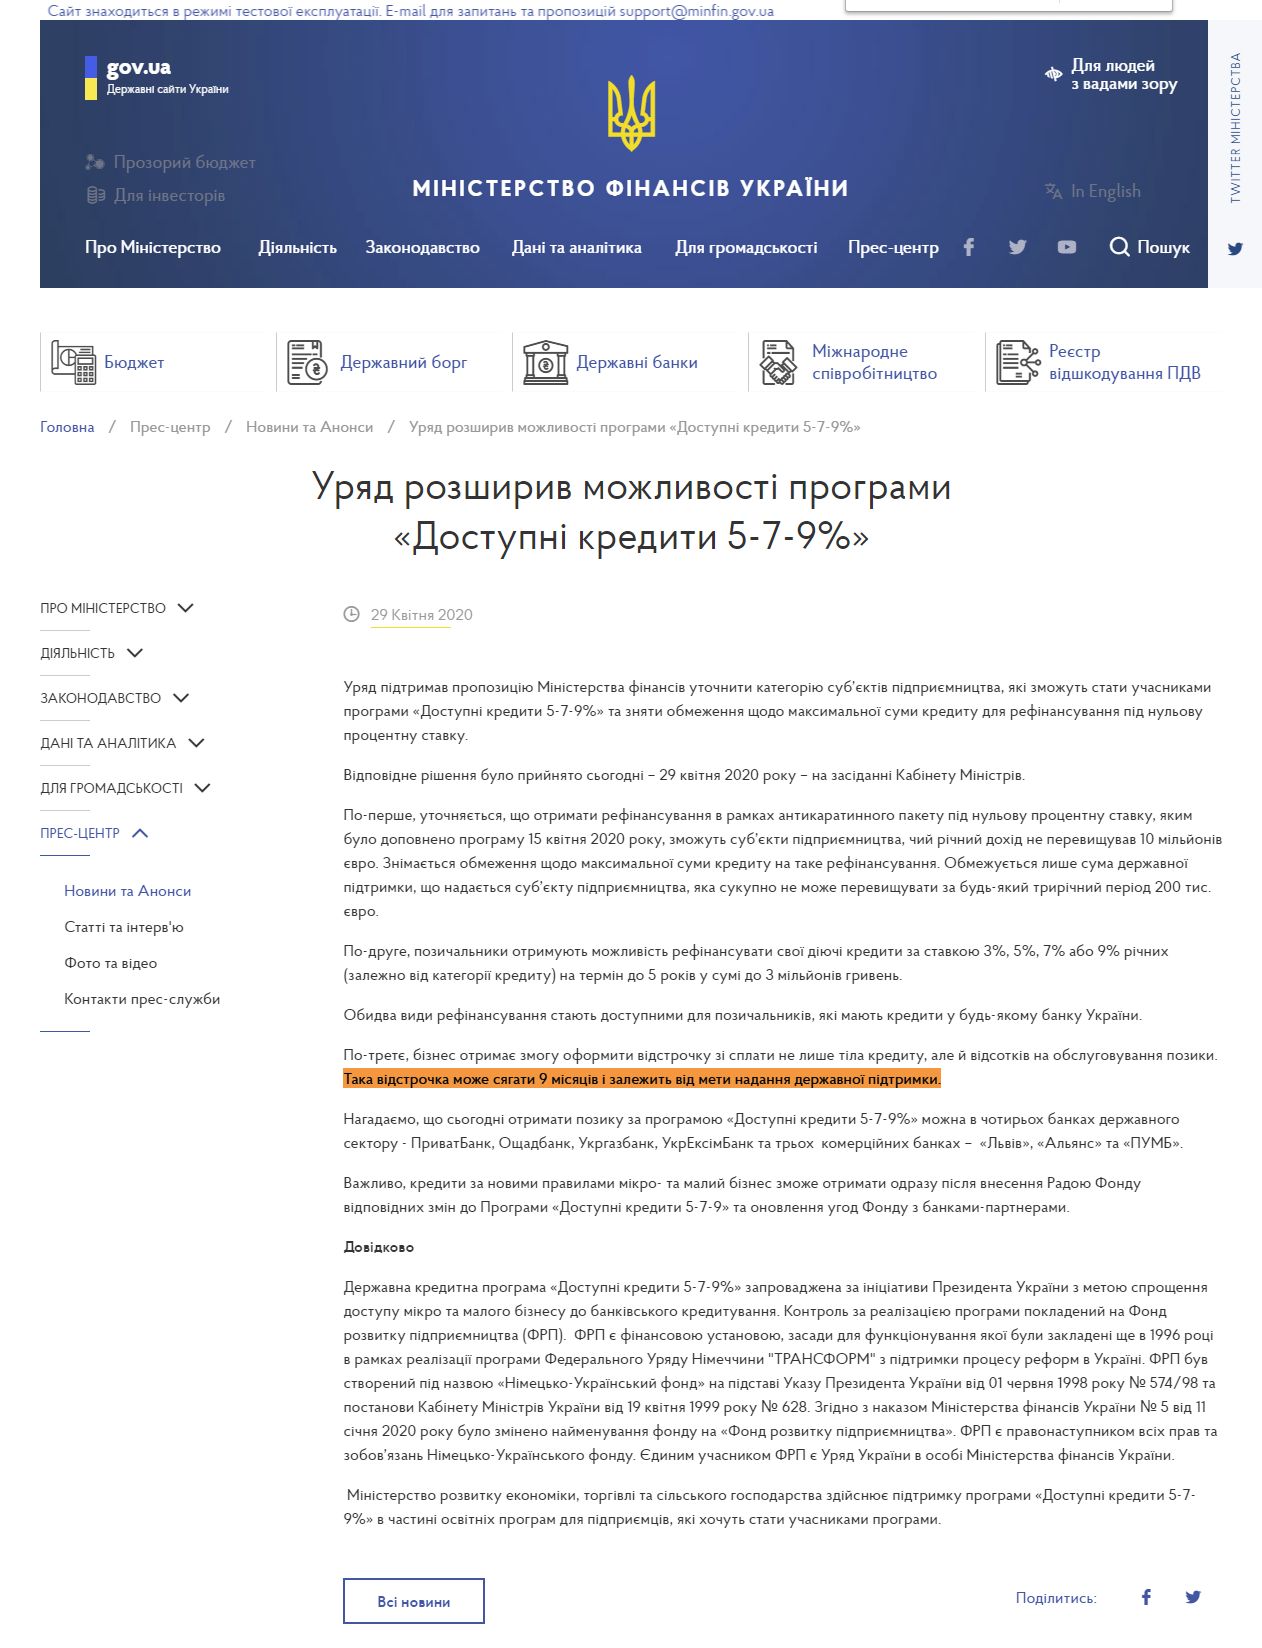 https://www.kmu.gov.ua/news/uryad-rozshiriv-mozhlivosti-programi-dostupni-krediti-5-7-9